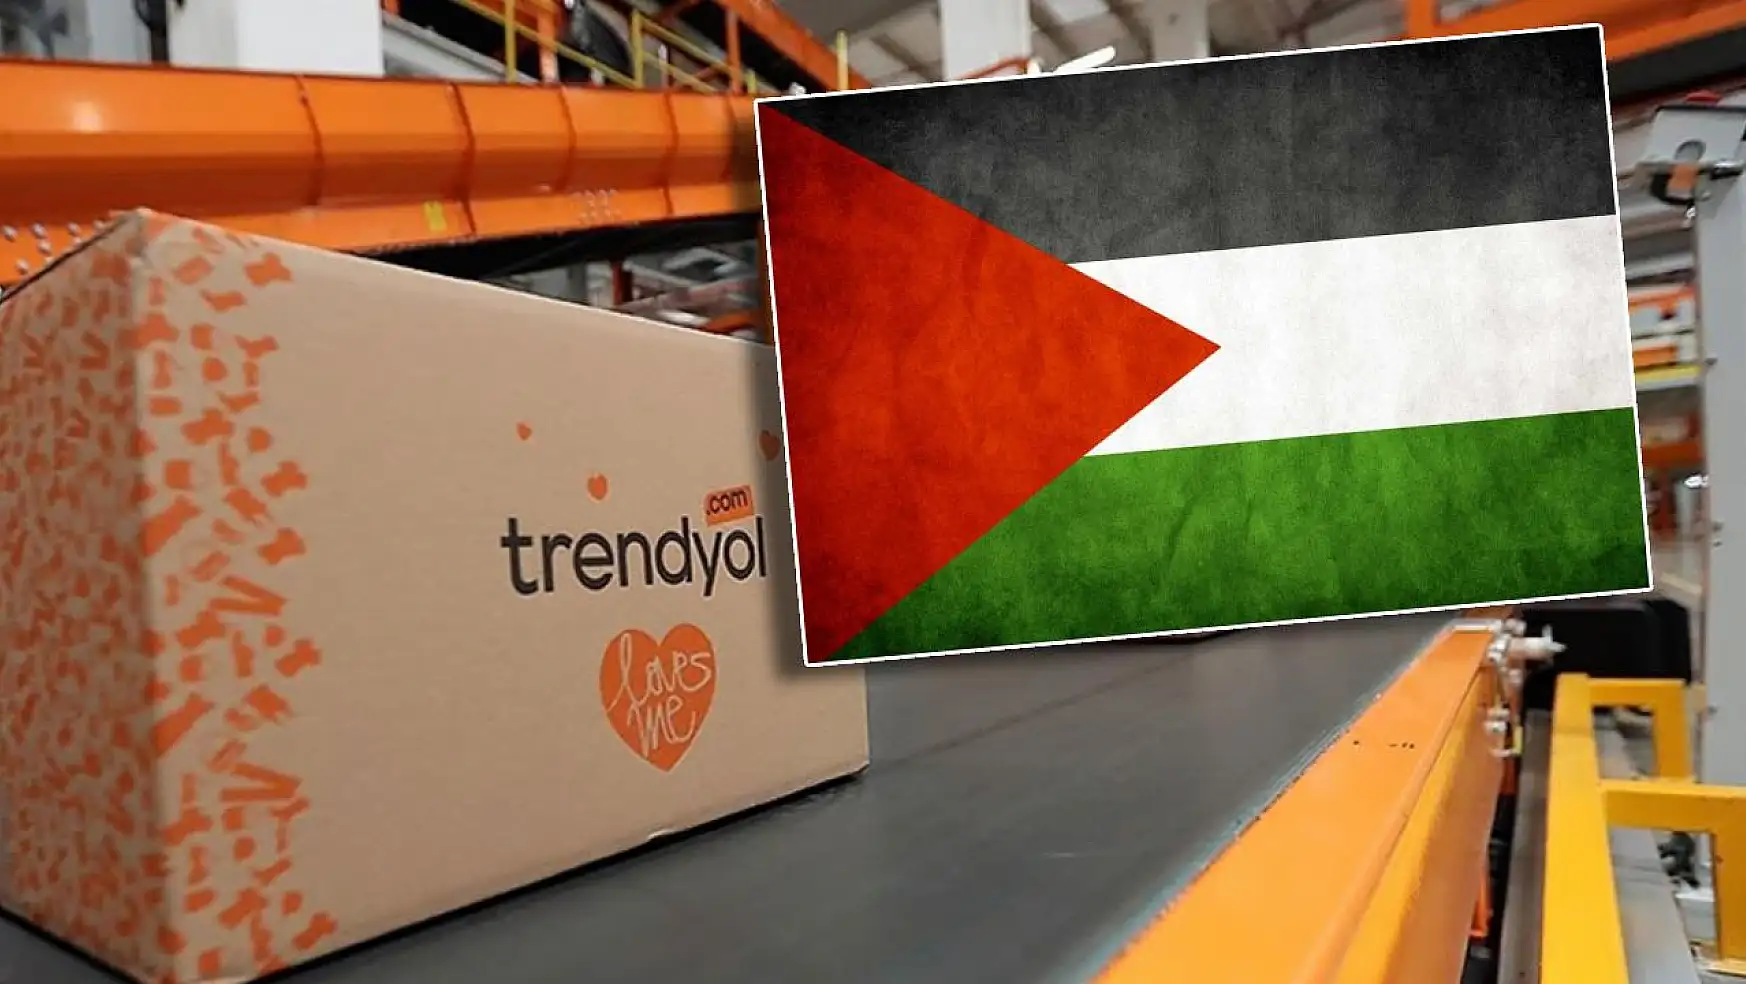 Trendyol Filistin temalı ürünleri kaldırdı mı? Gelen tepkilerden sonra ilk açıklama